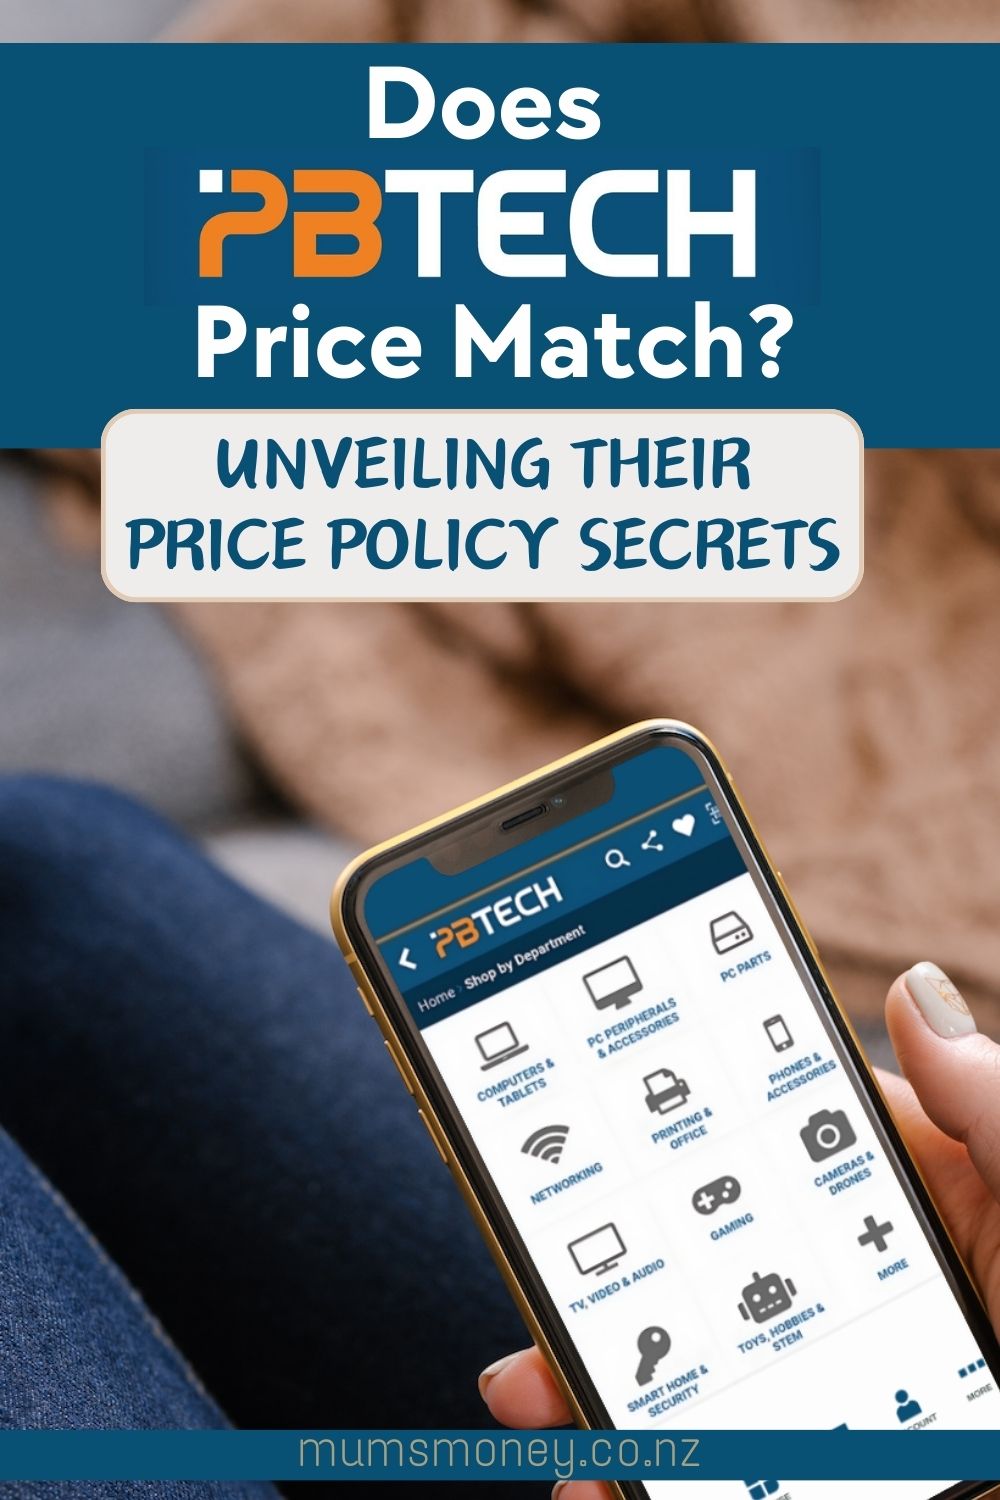 PB Tech Price Match